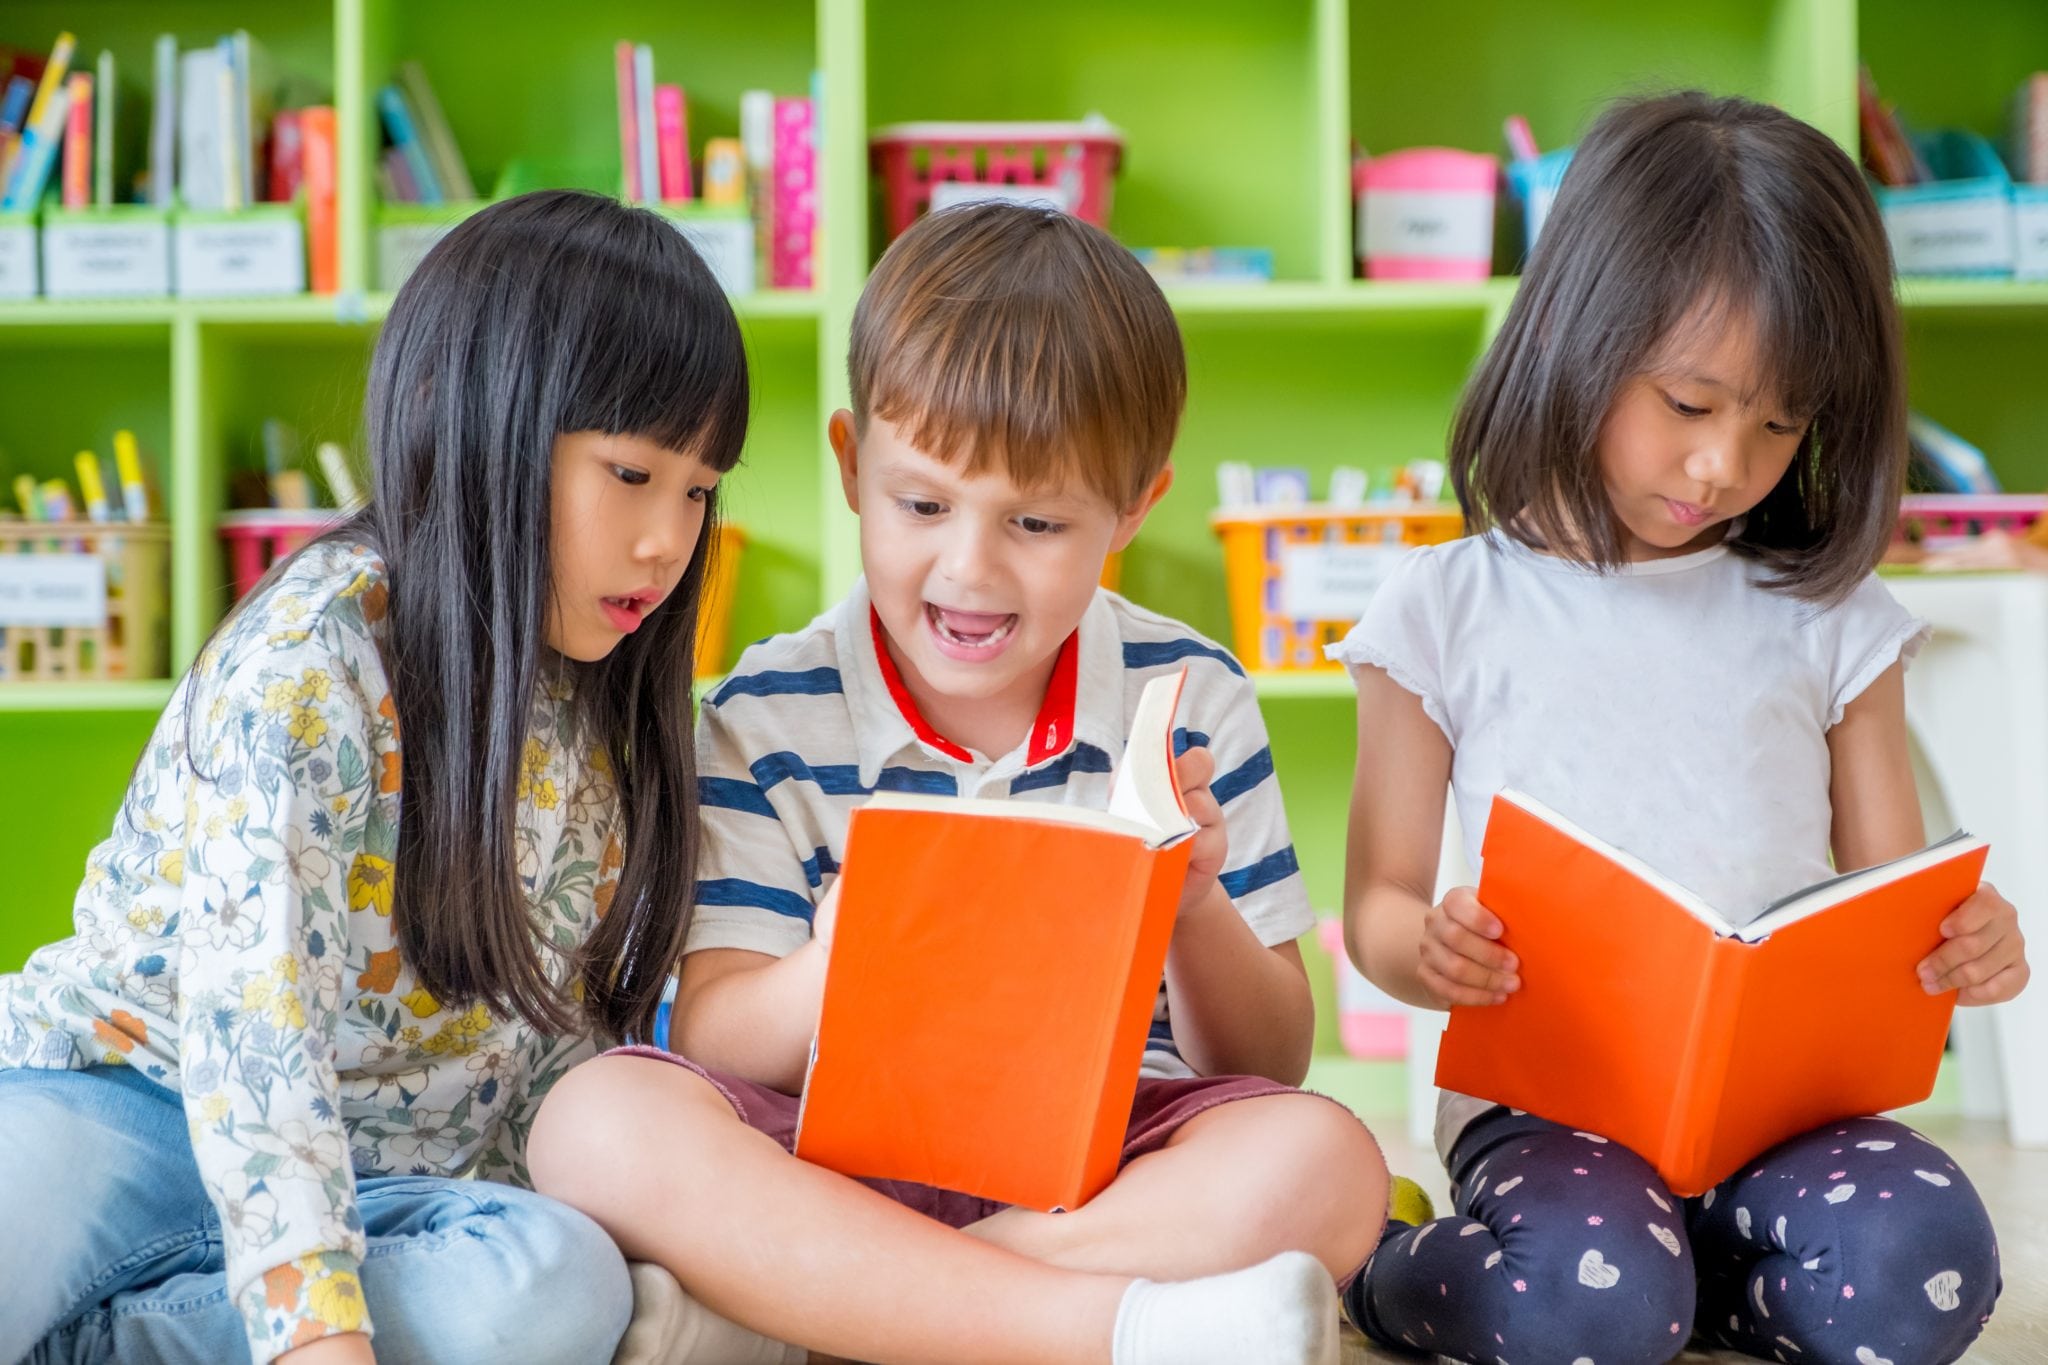 Children-sitting-on-floor-and-reading-tale-book-in-preschool-libraryKindergarten-school-education-concept.-859996890_3869x2580-copy